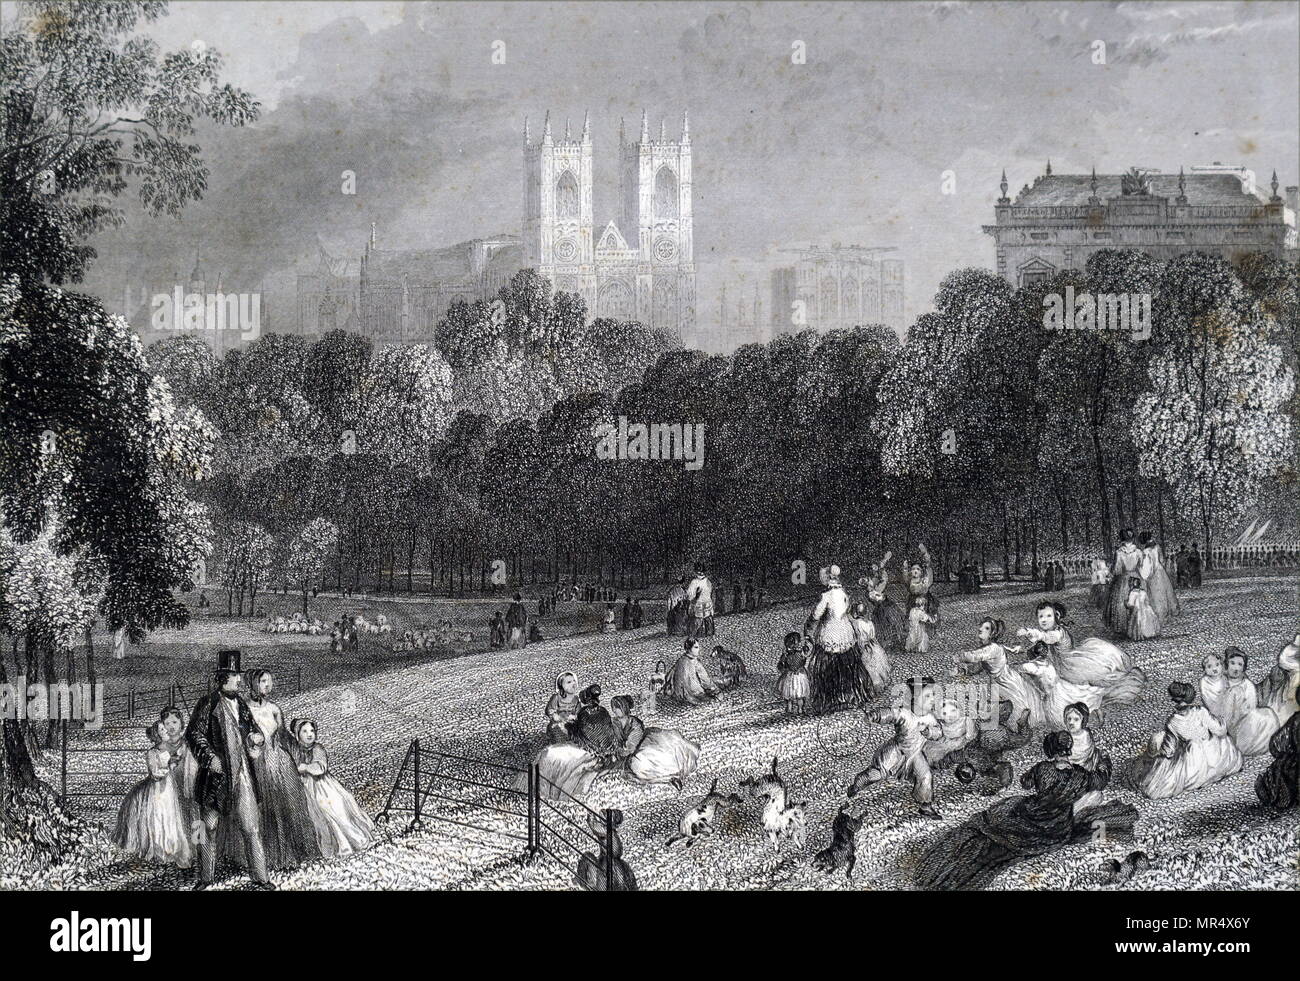 Abbildung: Darstellung einer Szene innerhalb von St James's Park, ein 23 Hektar großer Park in Westminster, benannt nach einem Aussätzigen Krankenhaus St James gewidmet. Vom 19. Jahrhundert Stockfoto